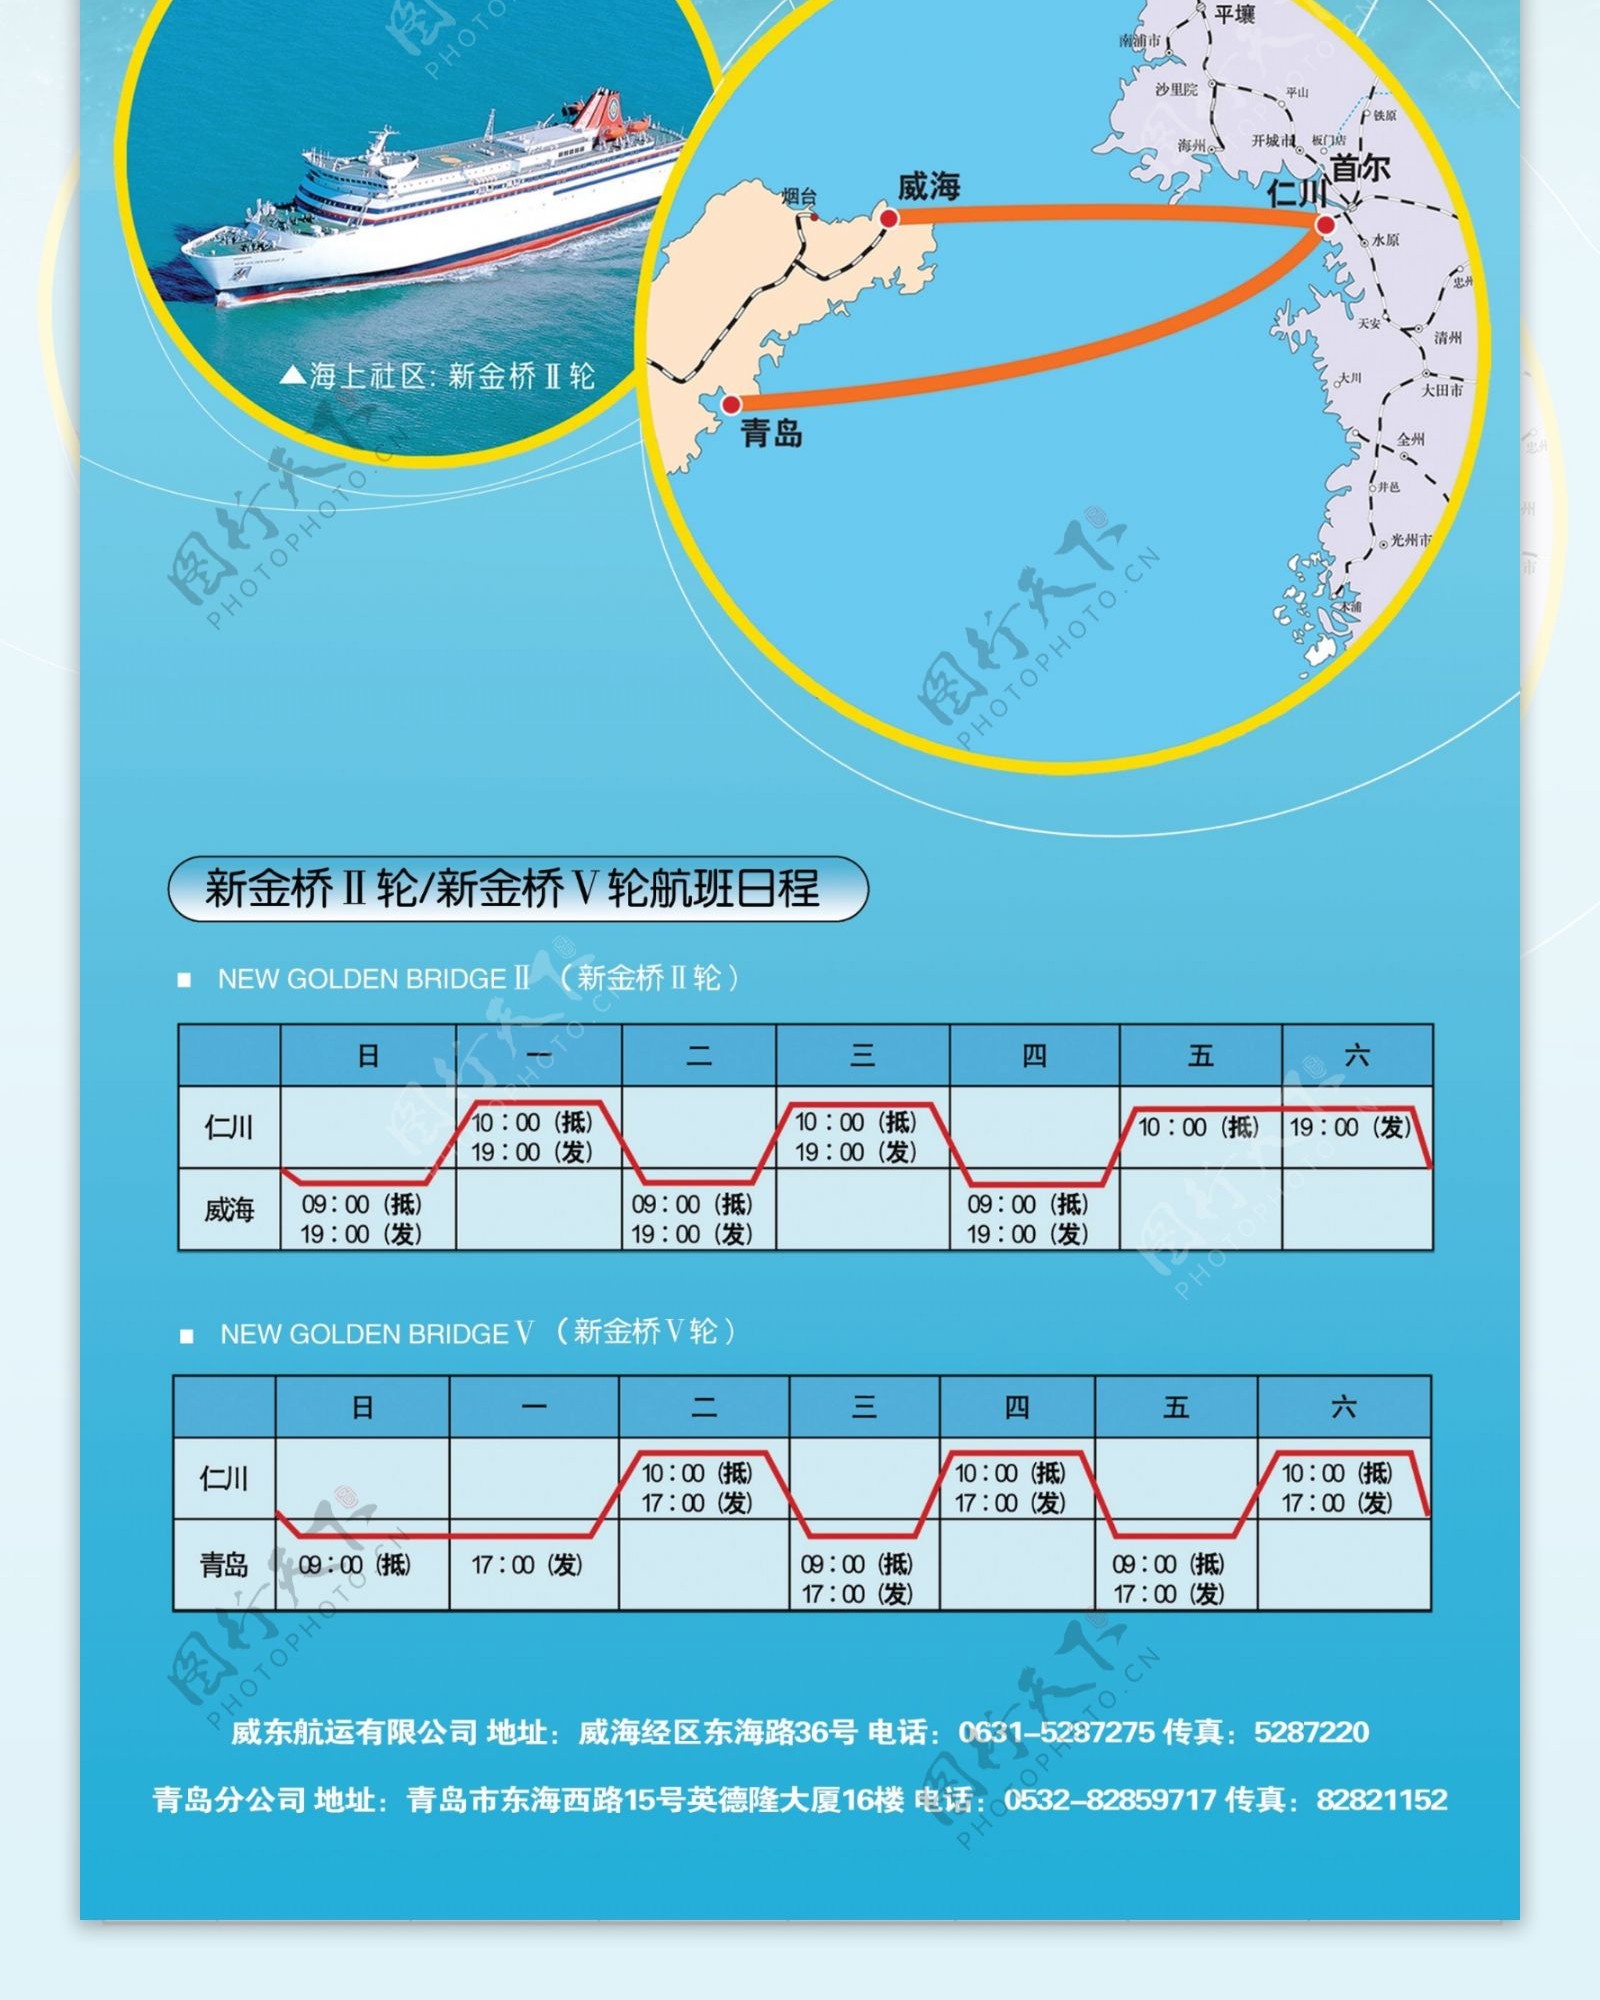 威东航运航线时间表